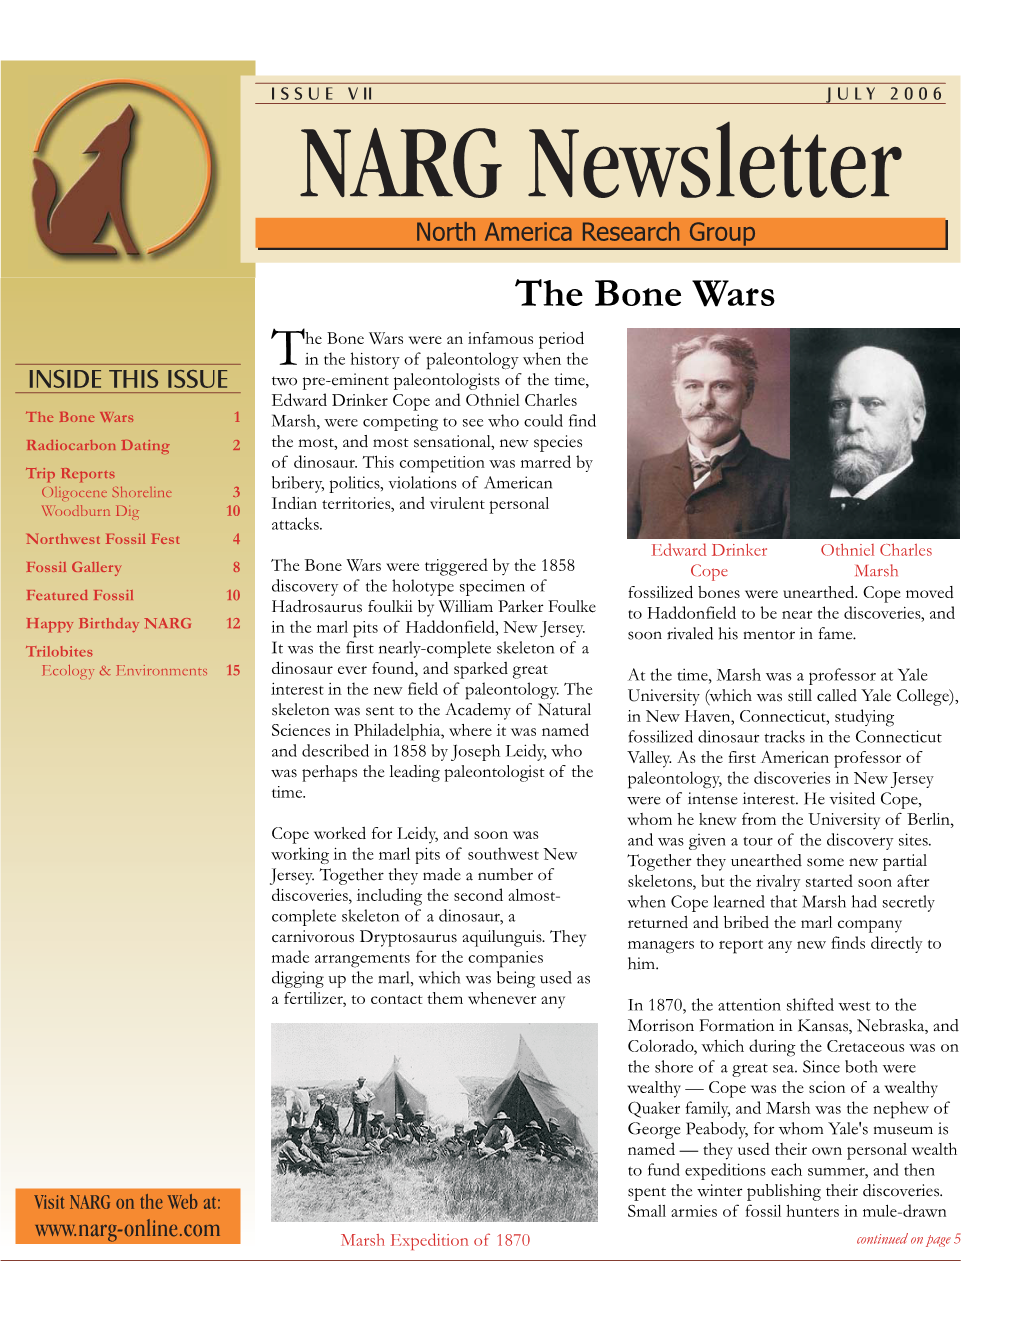 NARG Newsletter, July 2006 Radiocarbon Dating